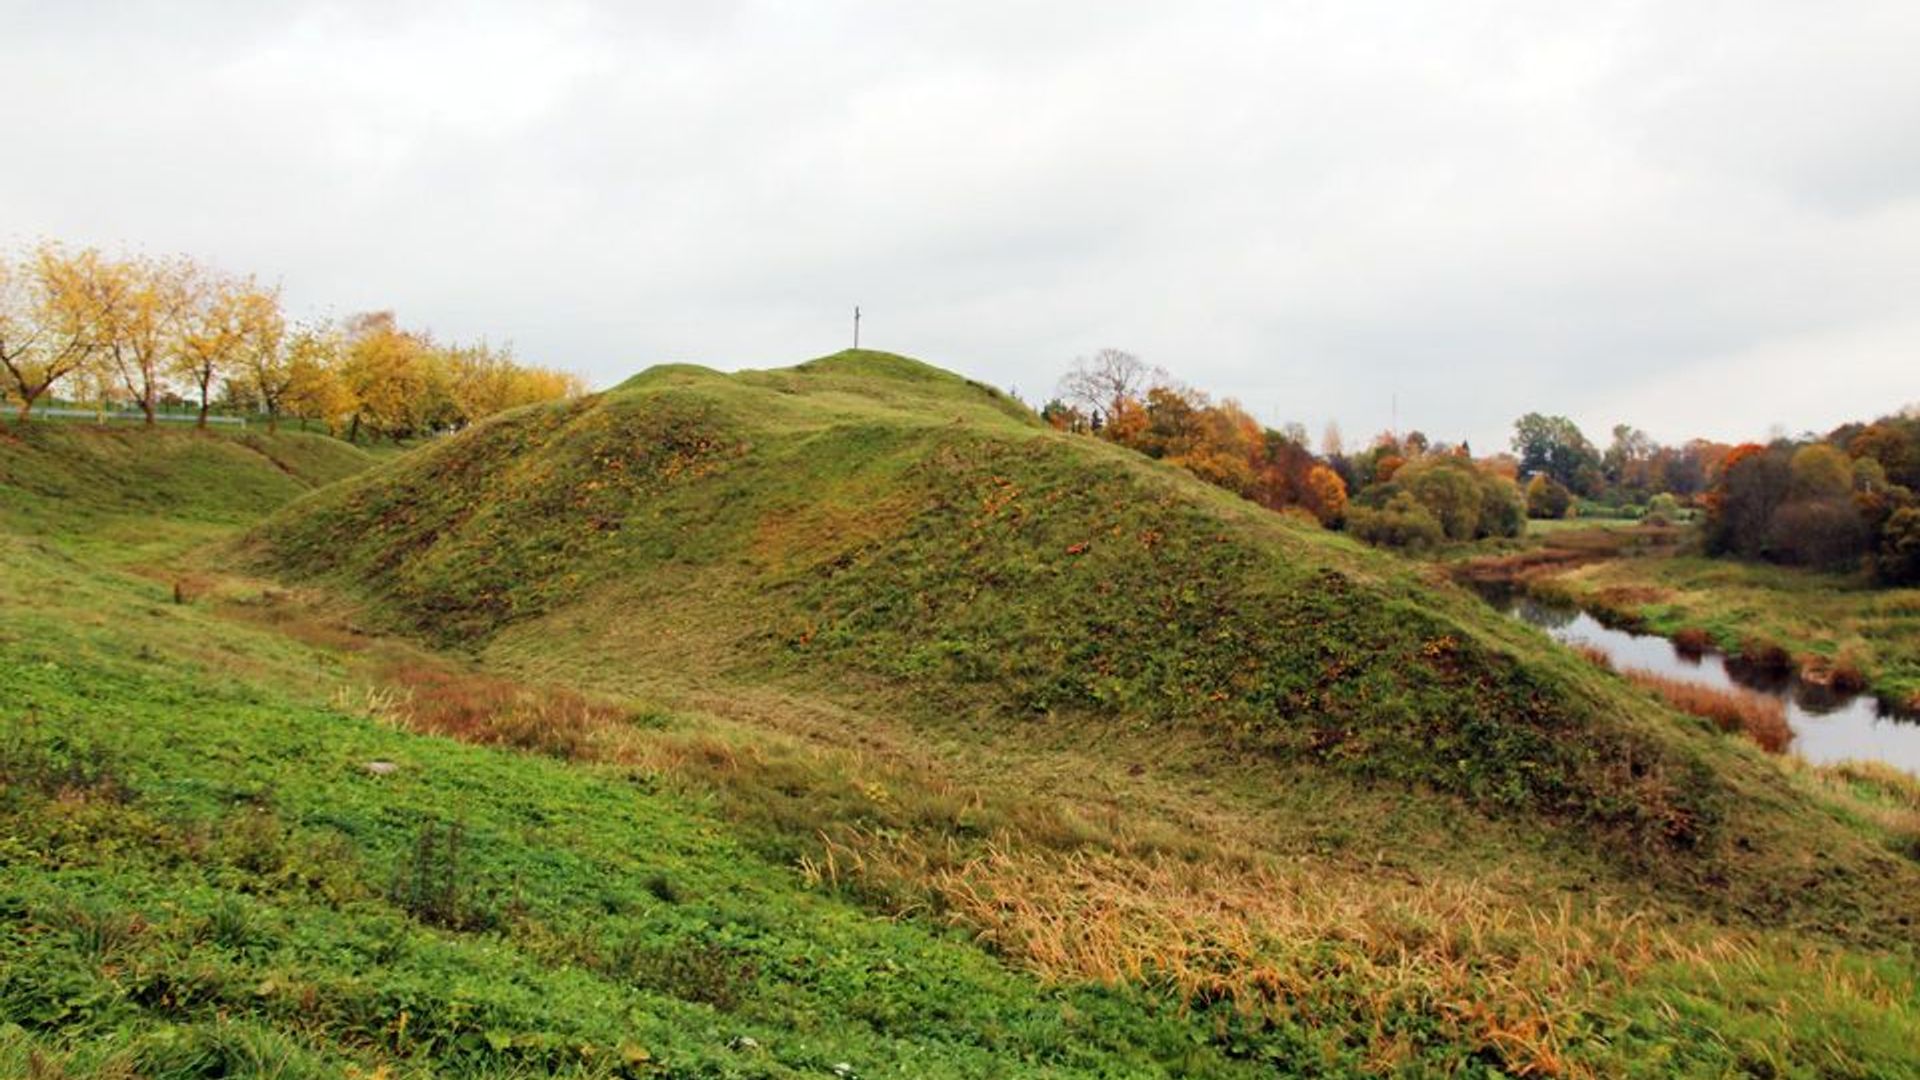 Papilė II Mound